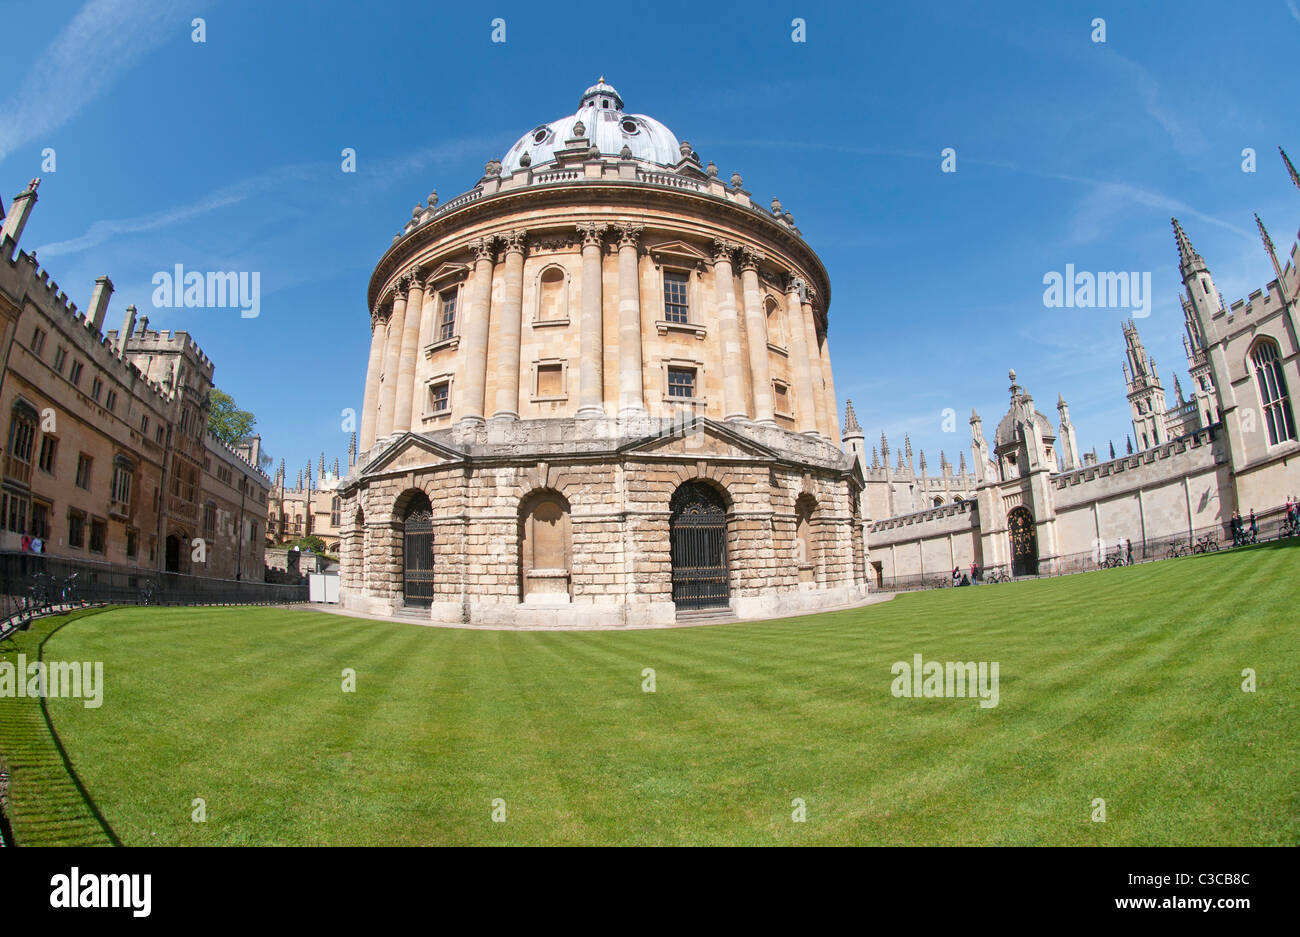 Radcliffe Camera, bibliothèque circulaire conçu par James Gibbs, Radcliffe Square, Oxford, England, UK Banque D'Images